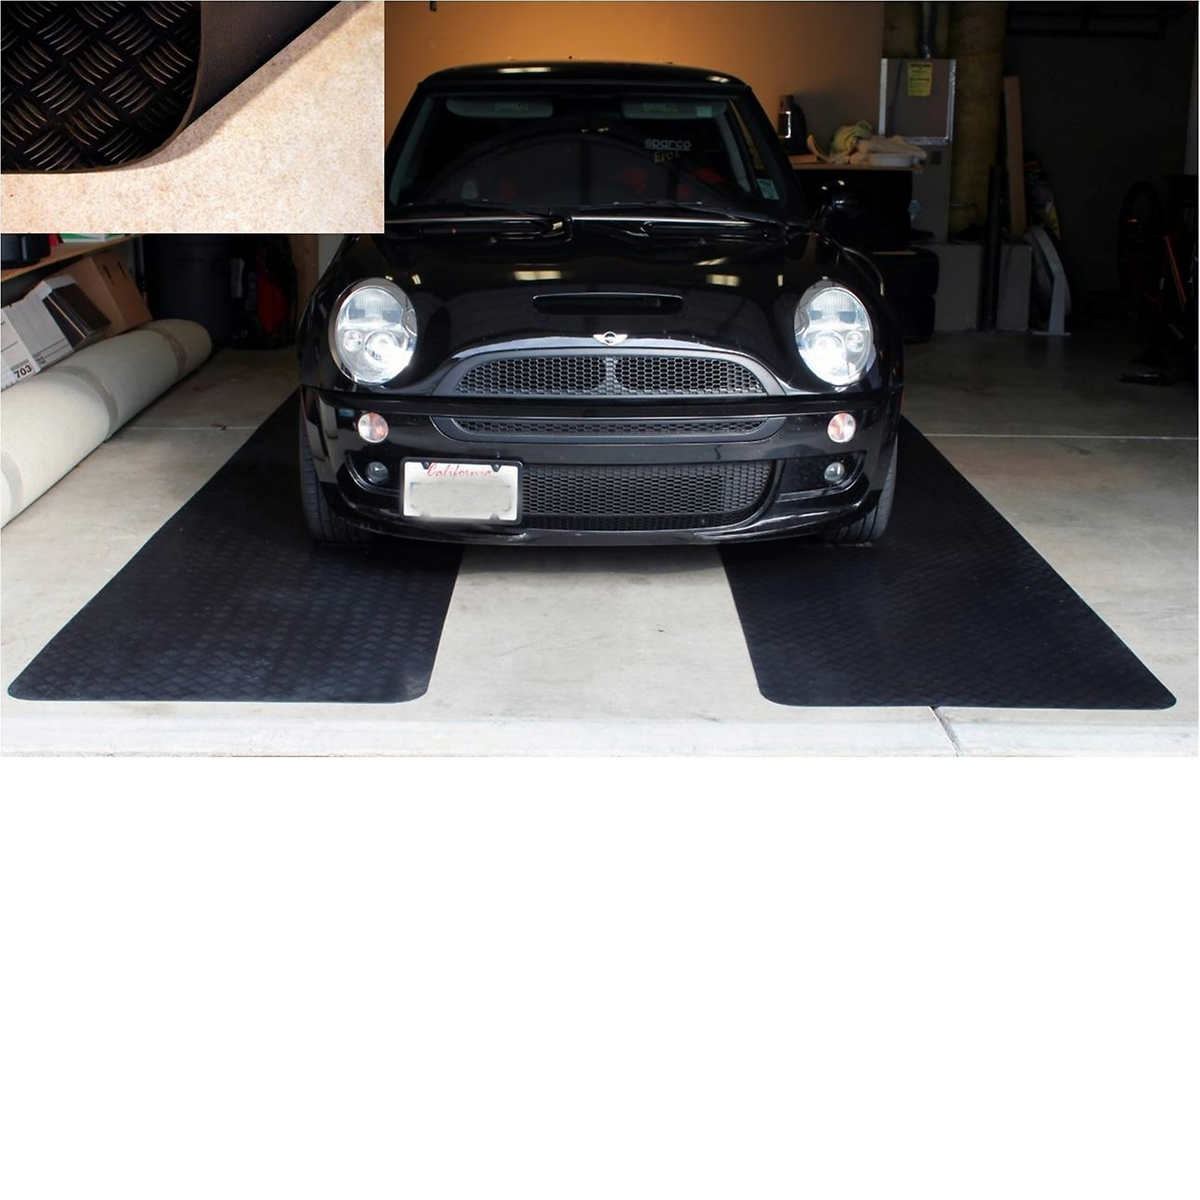 Coverguard 3 X 15 Xl Garage Floor Rubber Mat